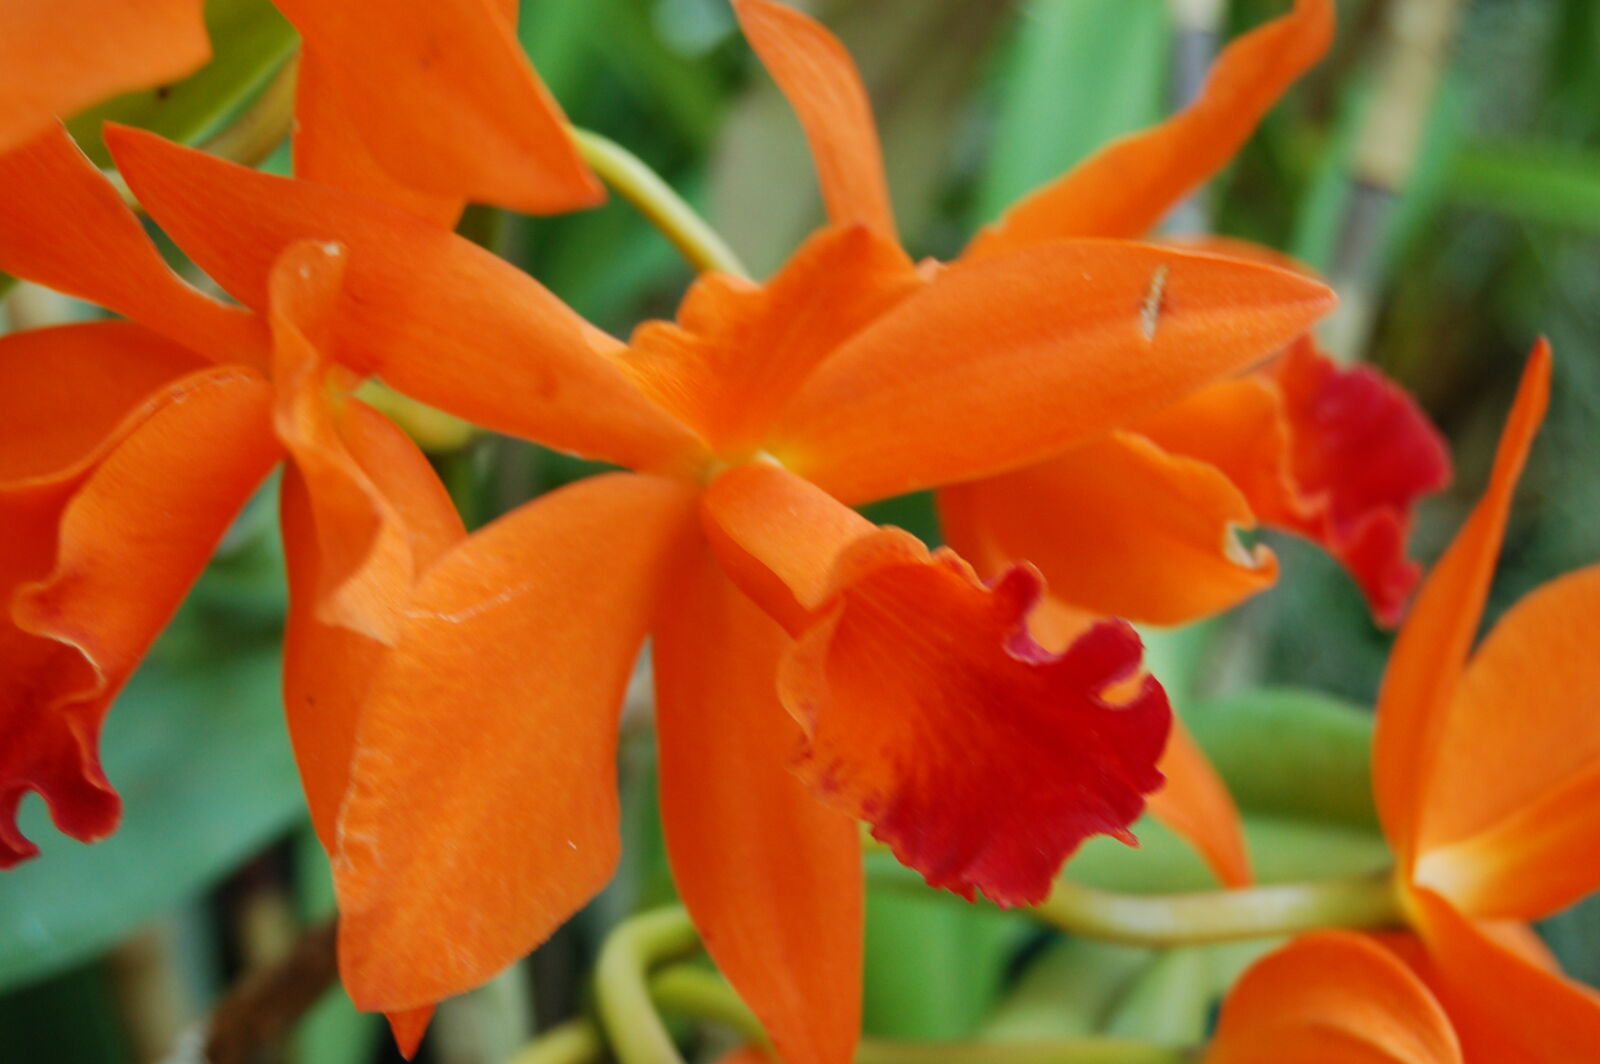 AF-S DX Zoom-Nikkor 18-55mm f/3.5-5.6G ED sample photo. Flower, flowers, orange, orchid photography